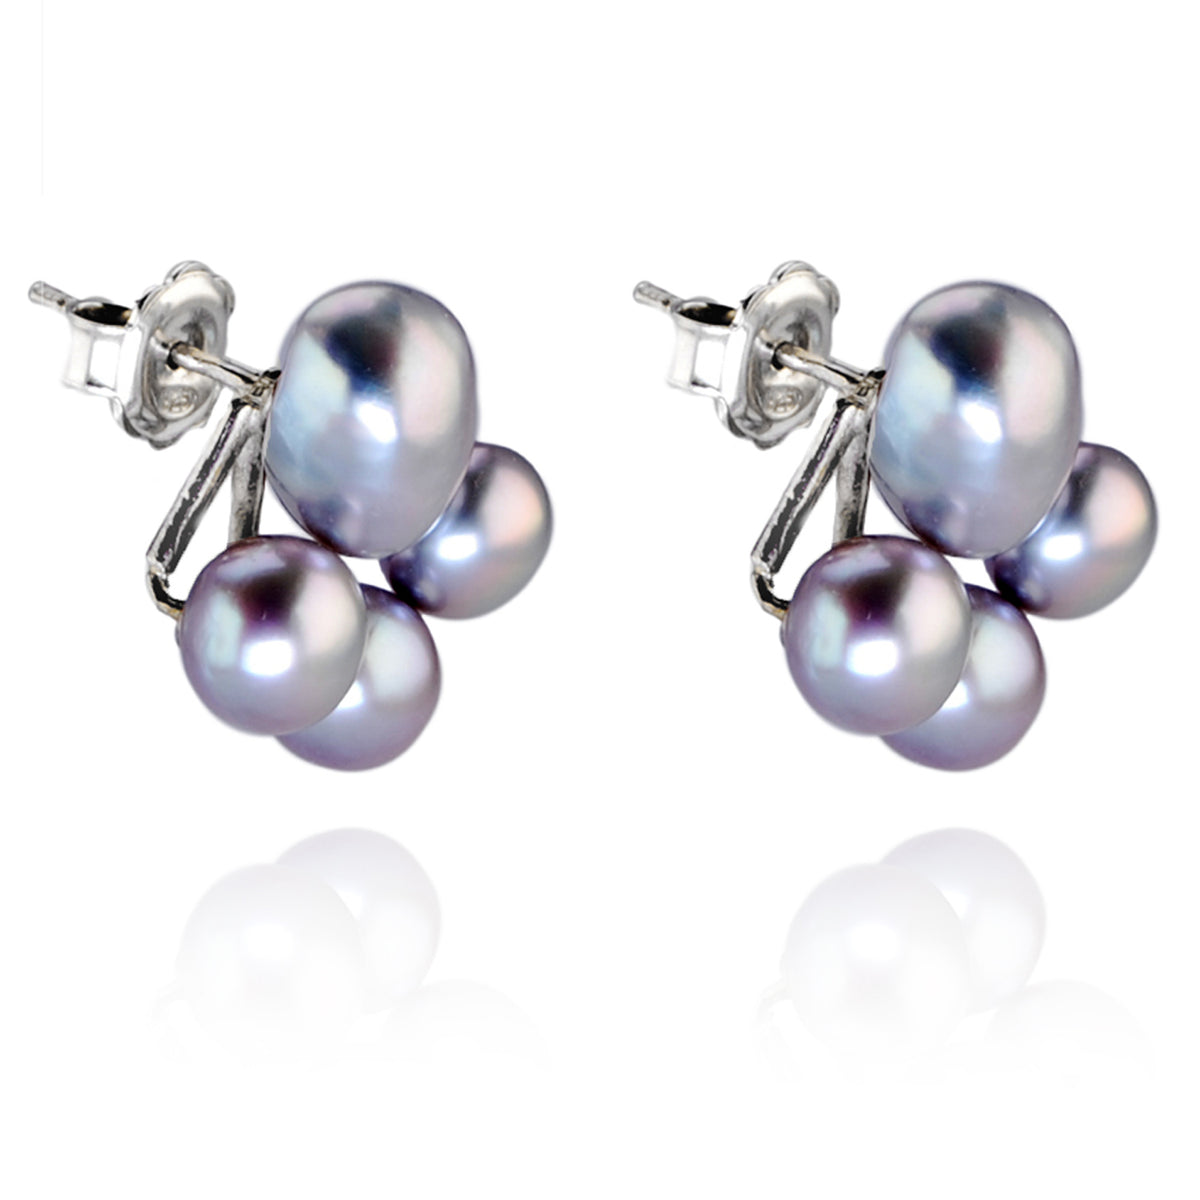 Grey Freshwater Pearl Cluster Earrings